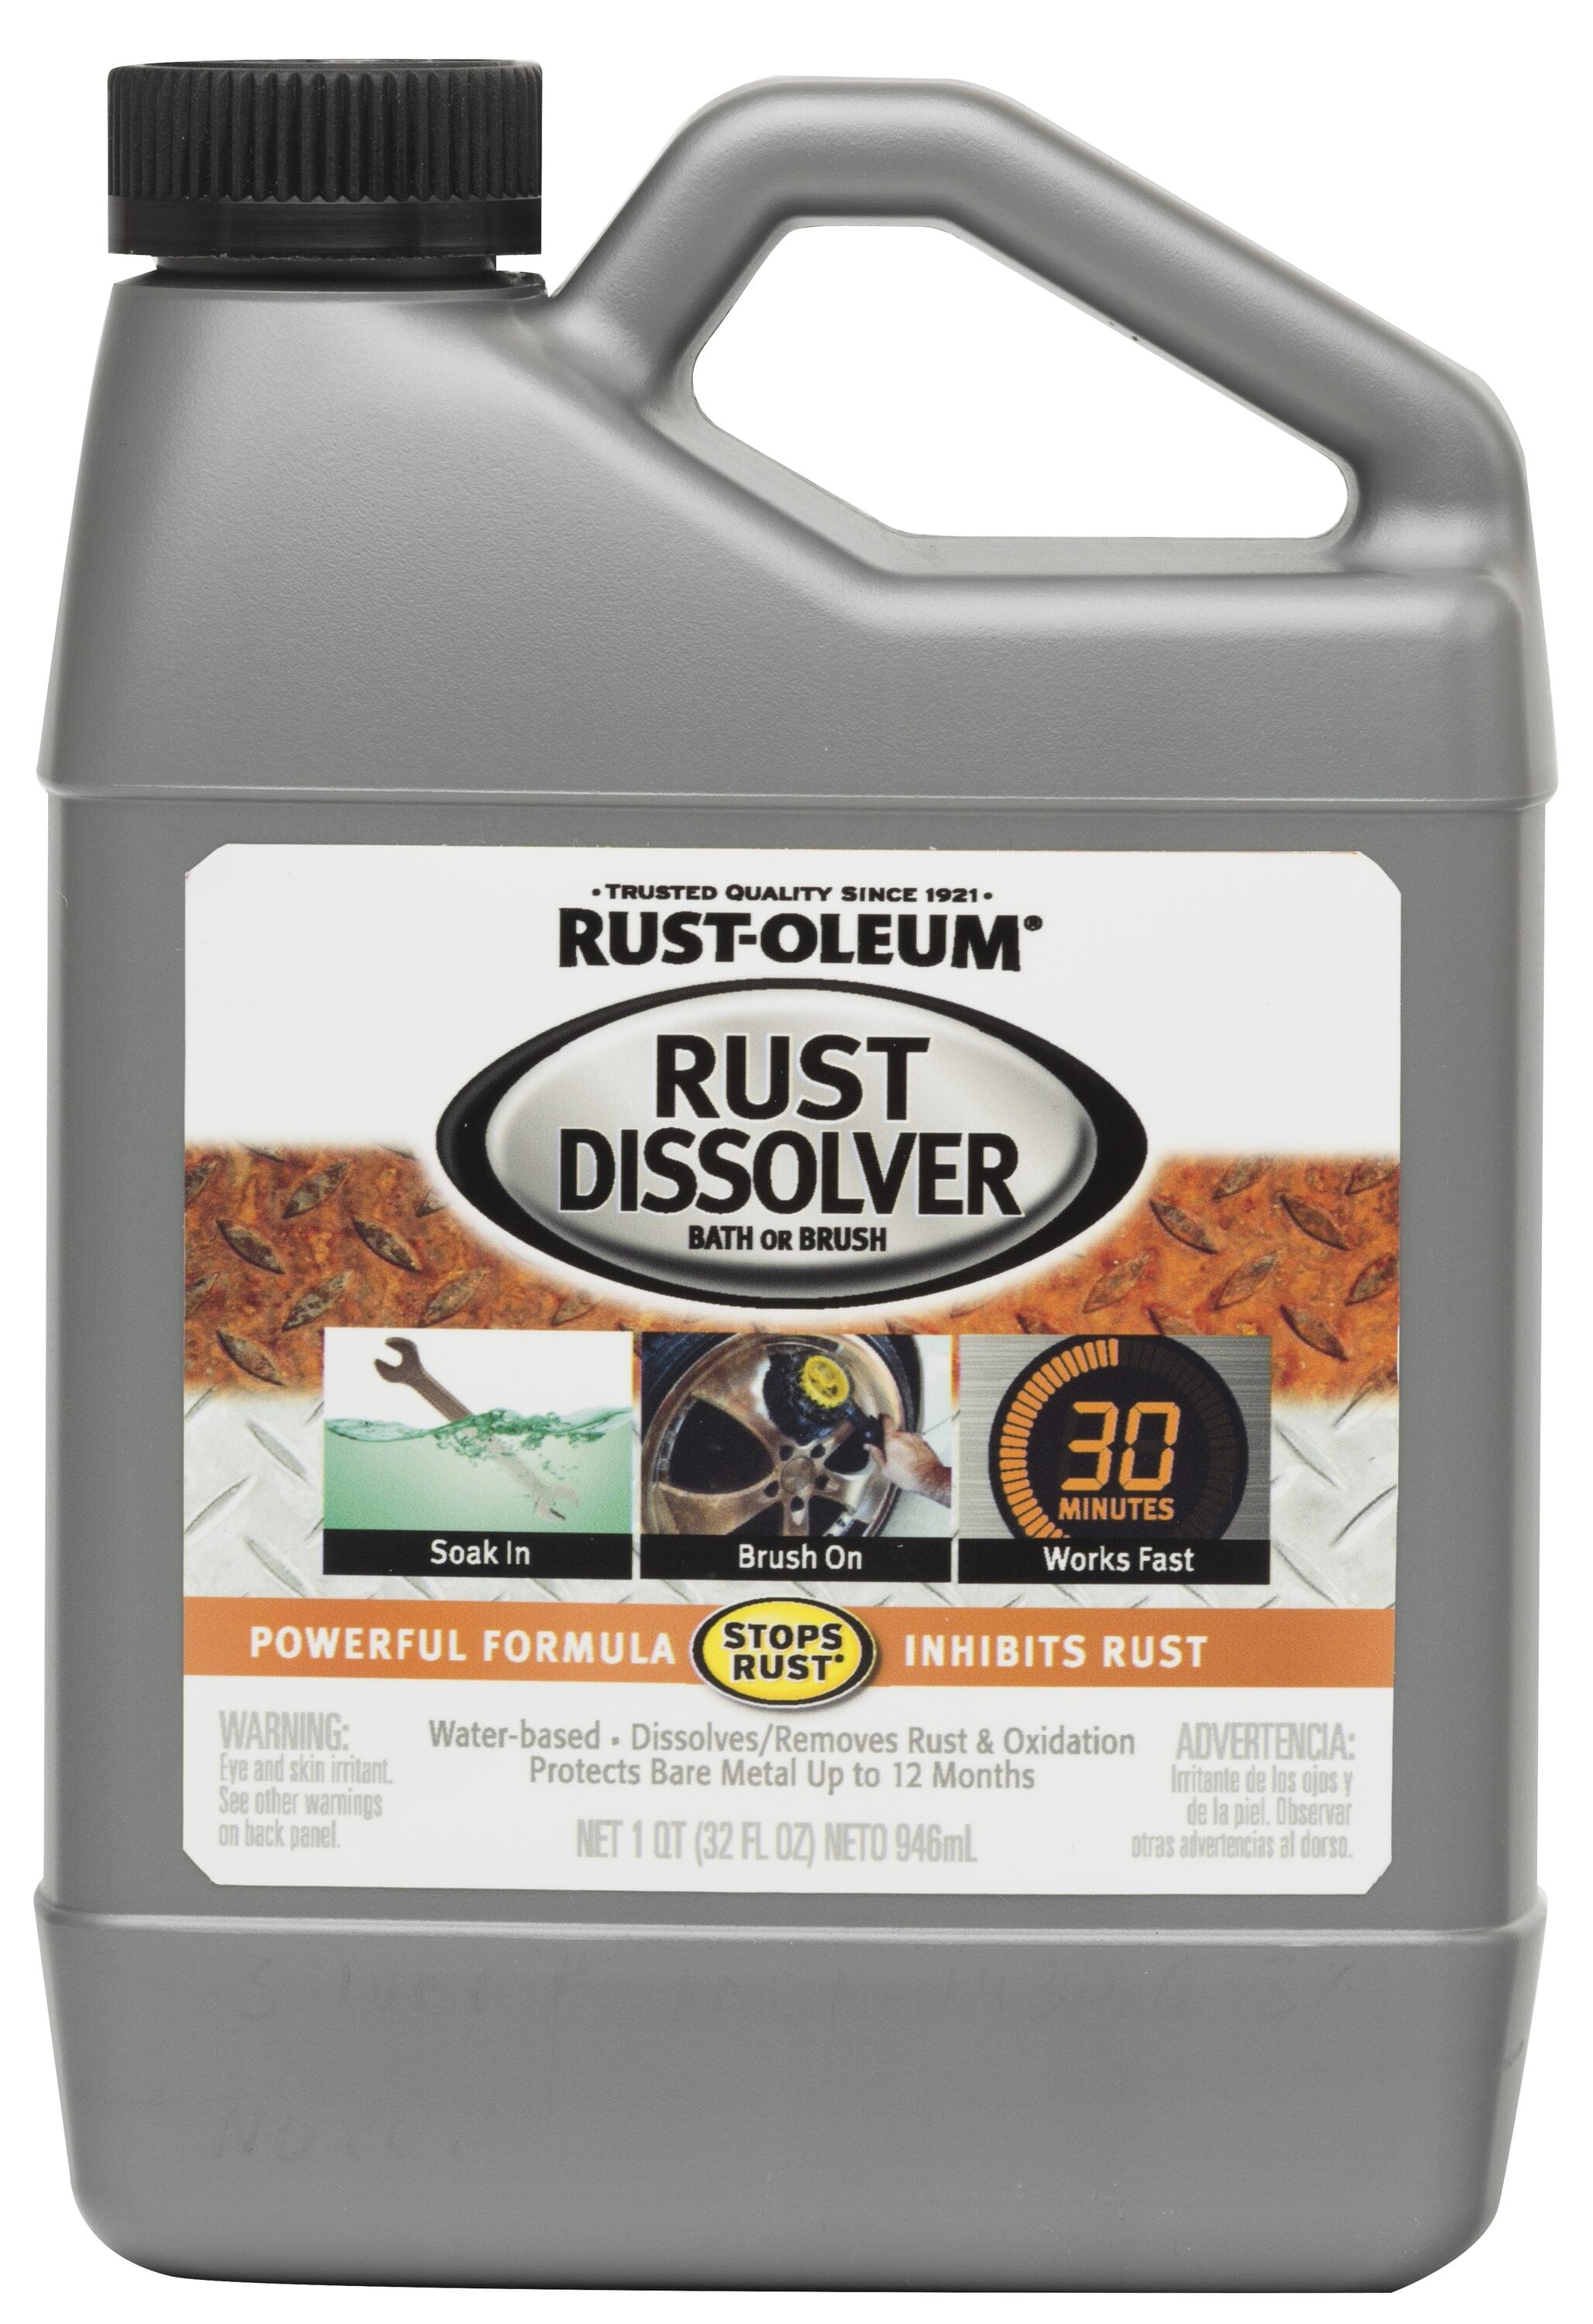 Rust-Oleum Rust Dissolver 32-fl oz Rust Remover in the Rust